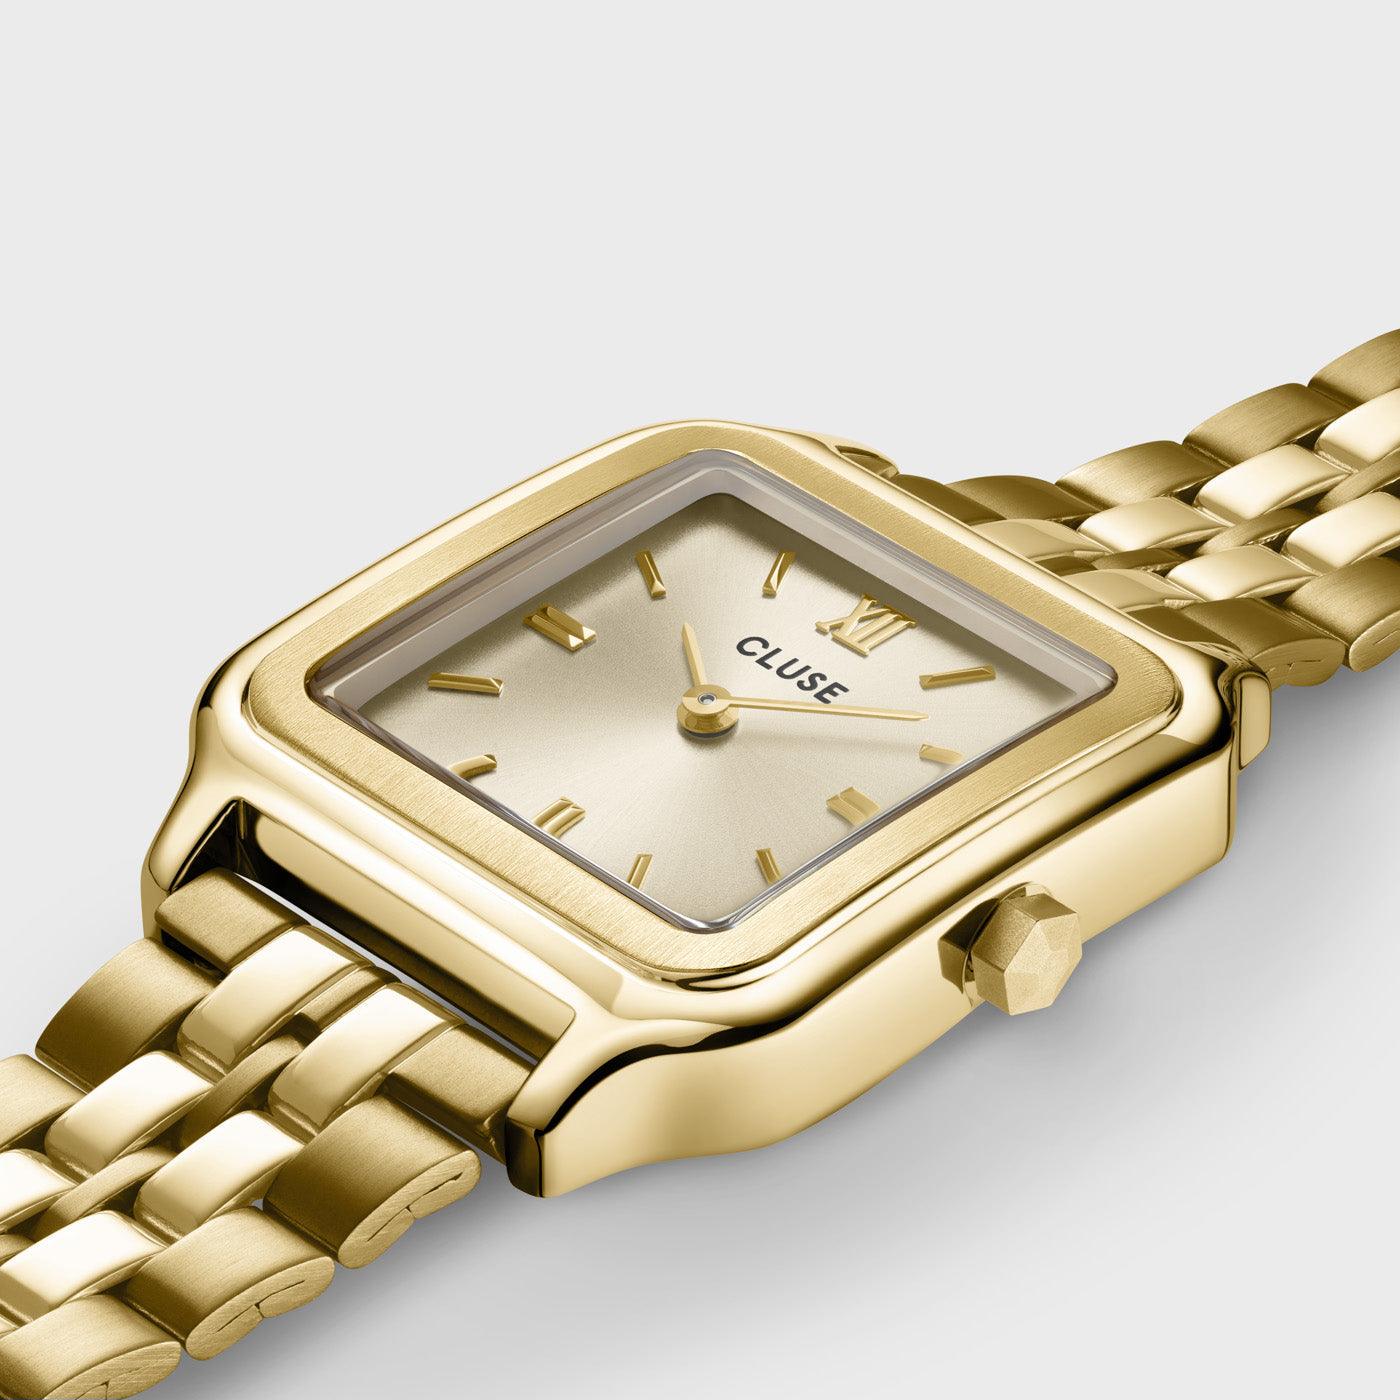 Cluse Gracieuse Watch Steel, Gold Colour - Cobalto Accesorios